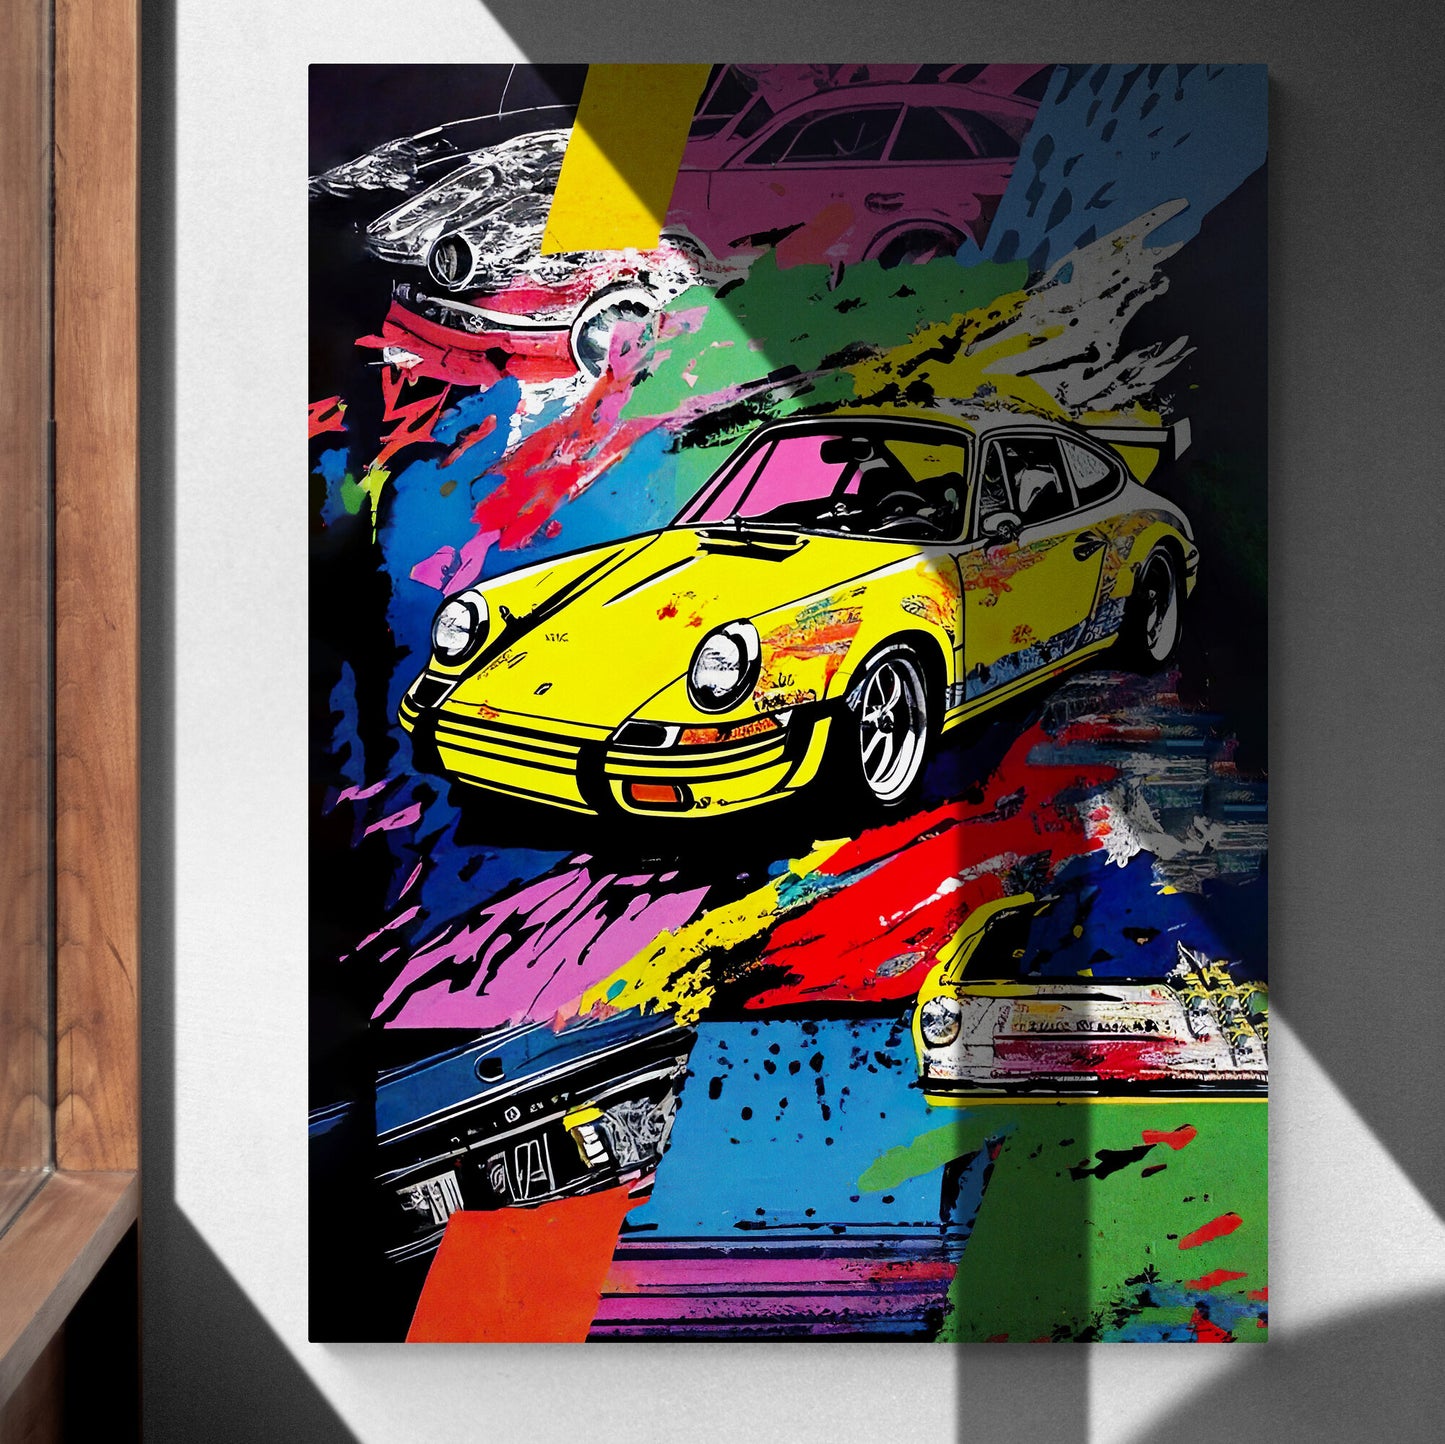 Porsche Pop Art